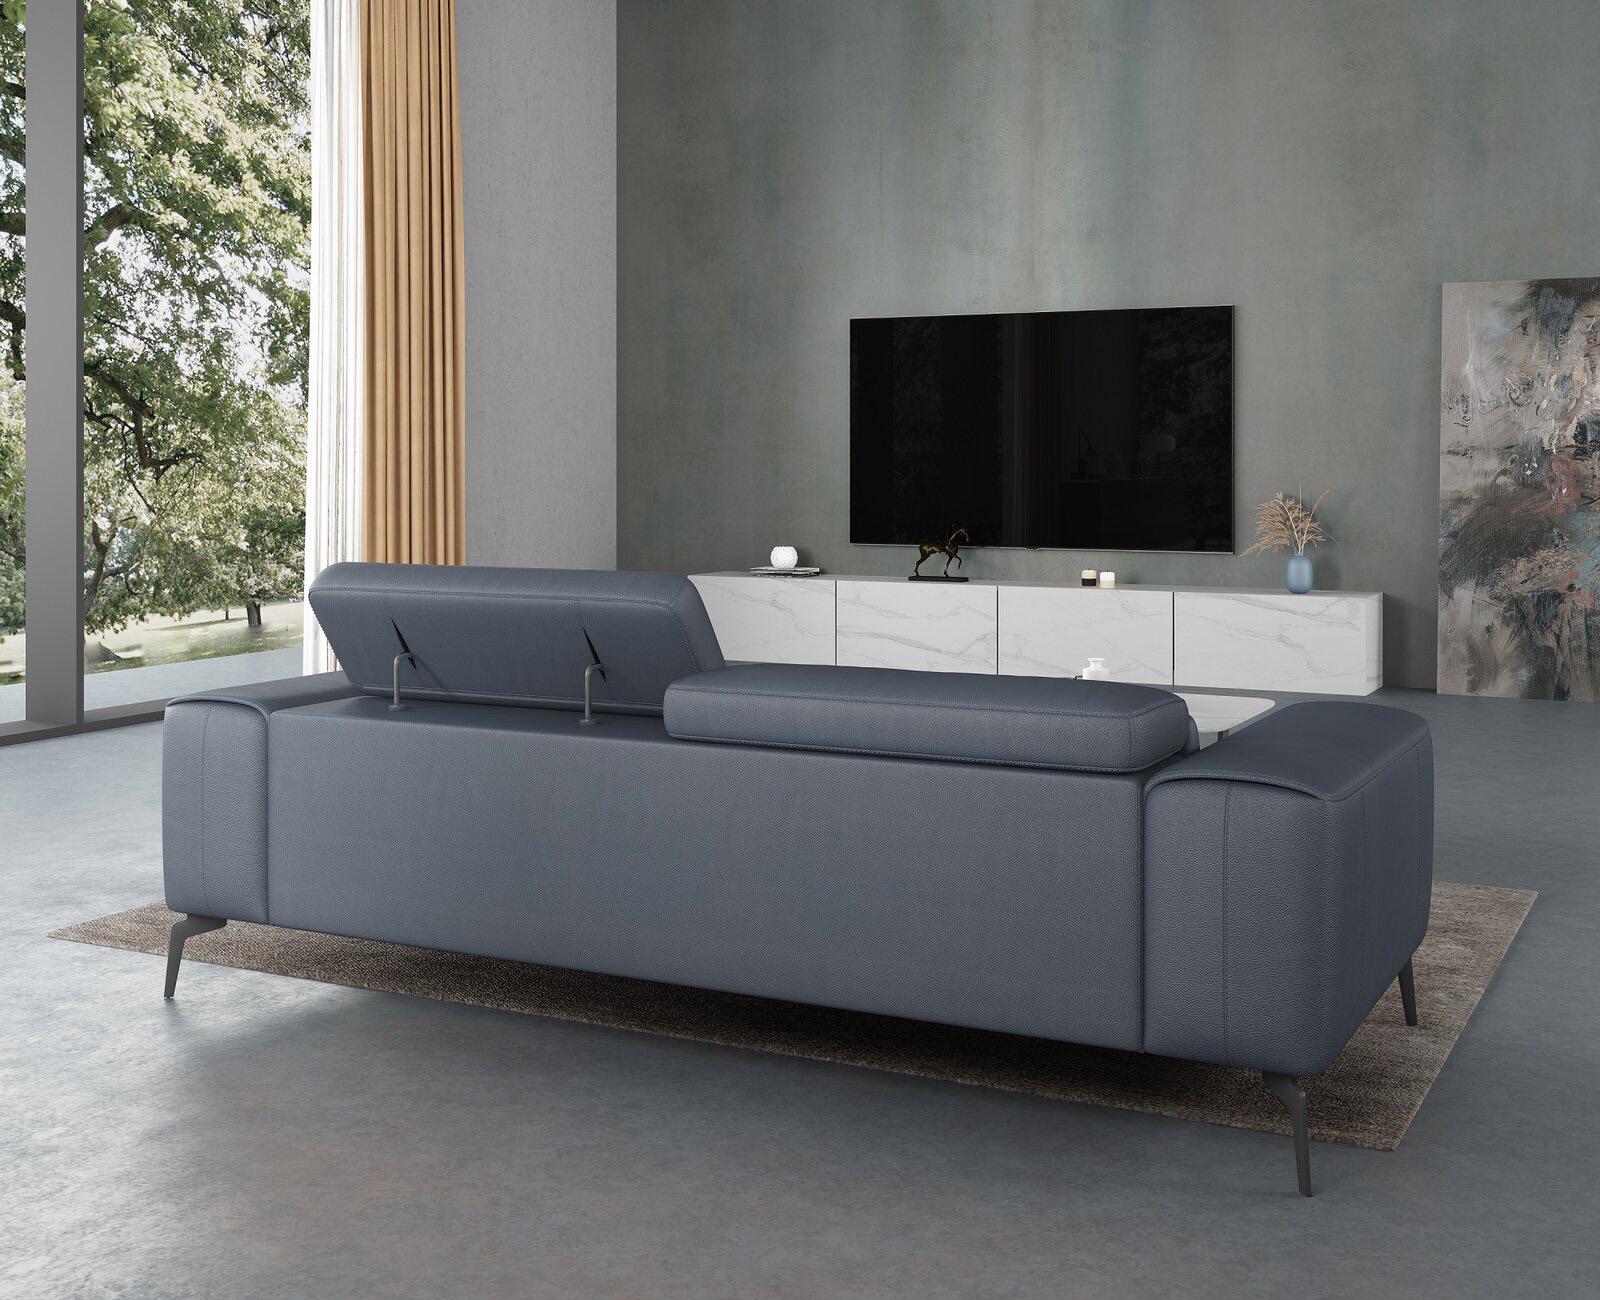 

                    
EUROPEAN FURNITURE CAVOUR Sofa Set Smoke/Gray Leather Purchase 
